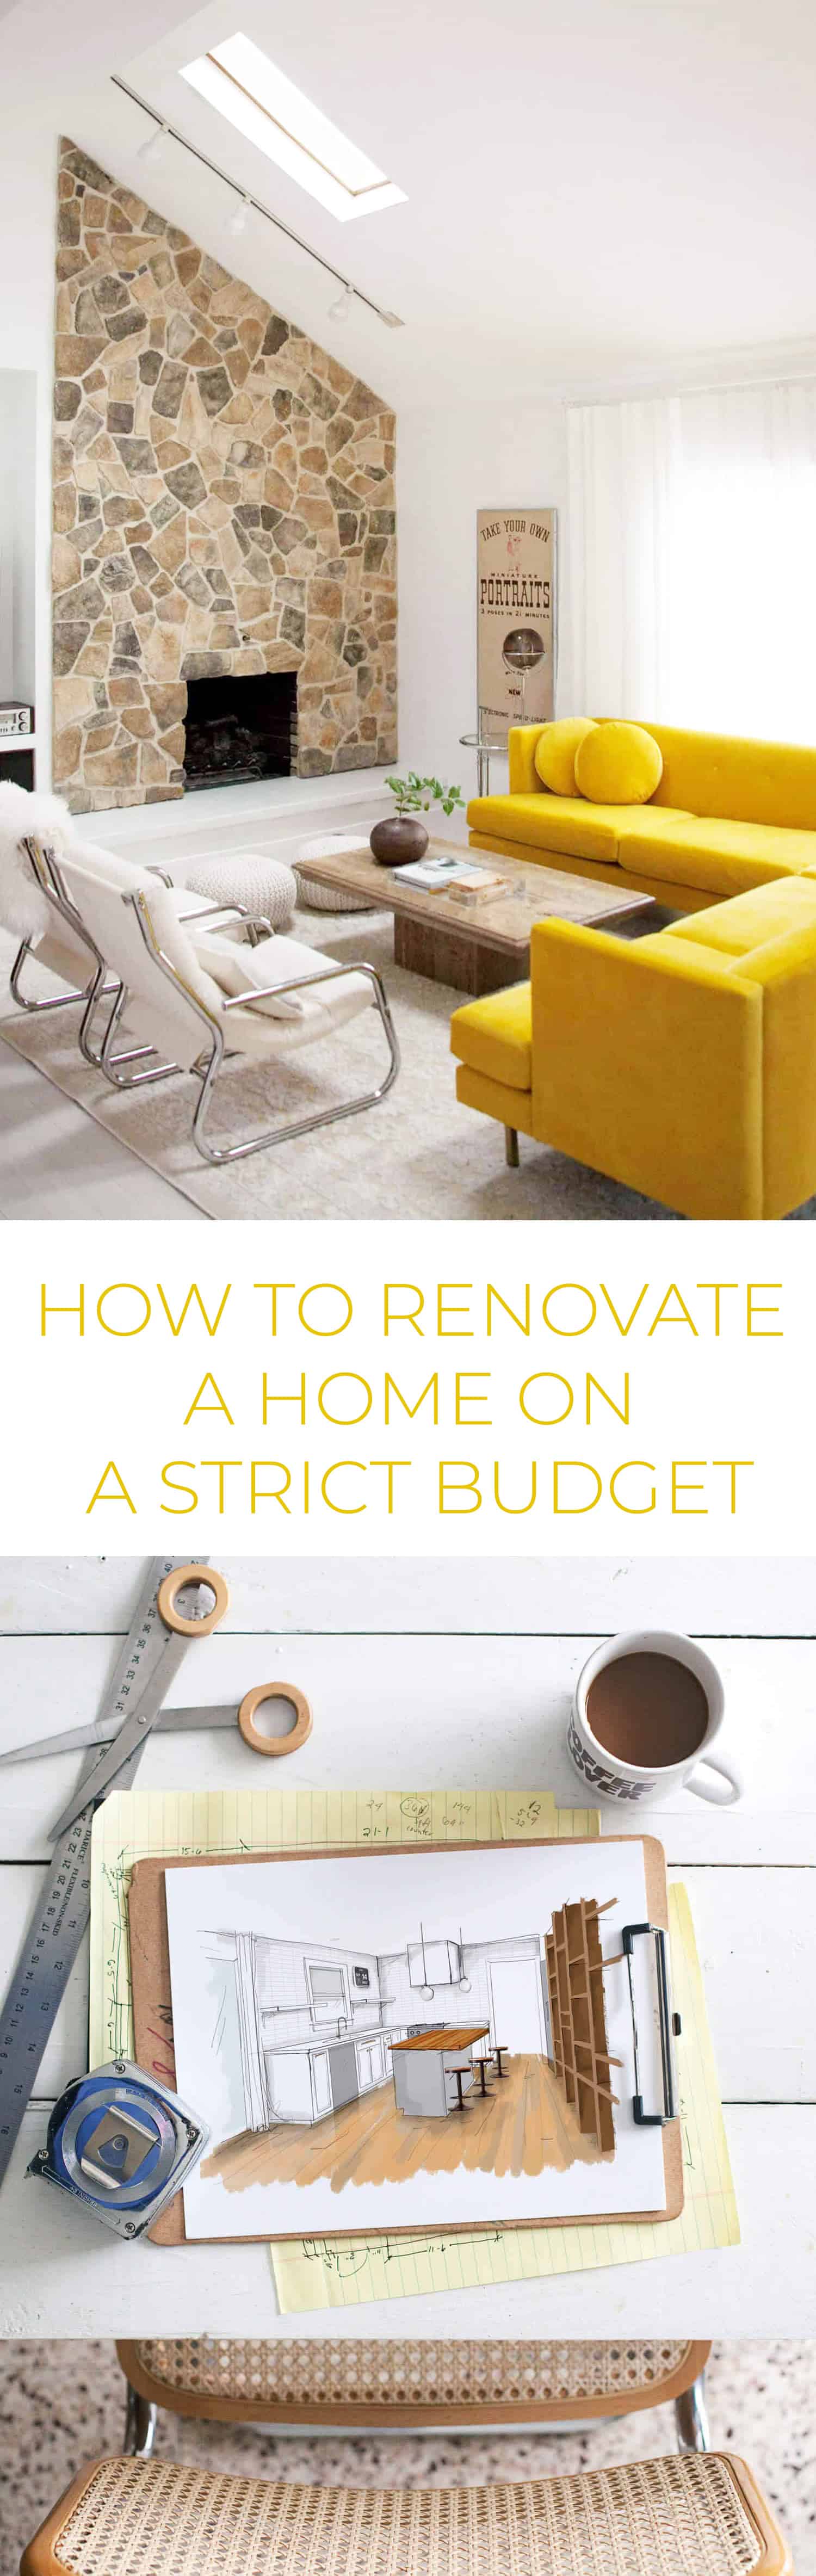 home renovation ideas on a budget